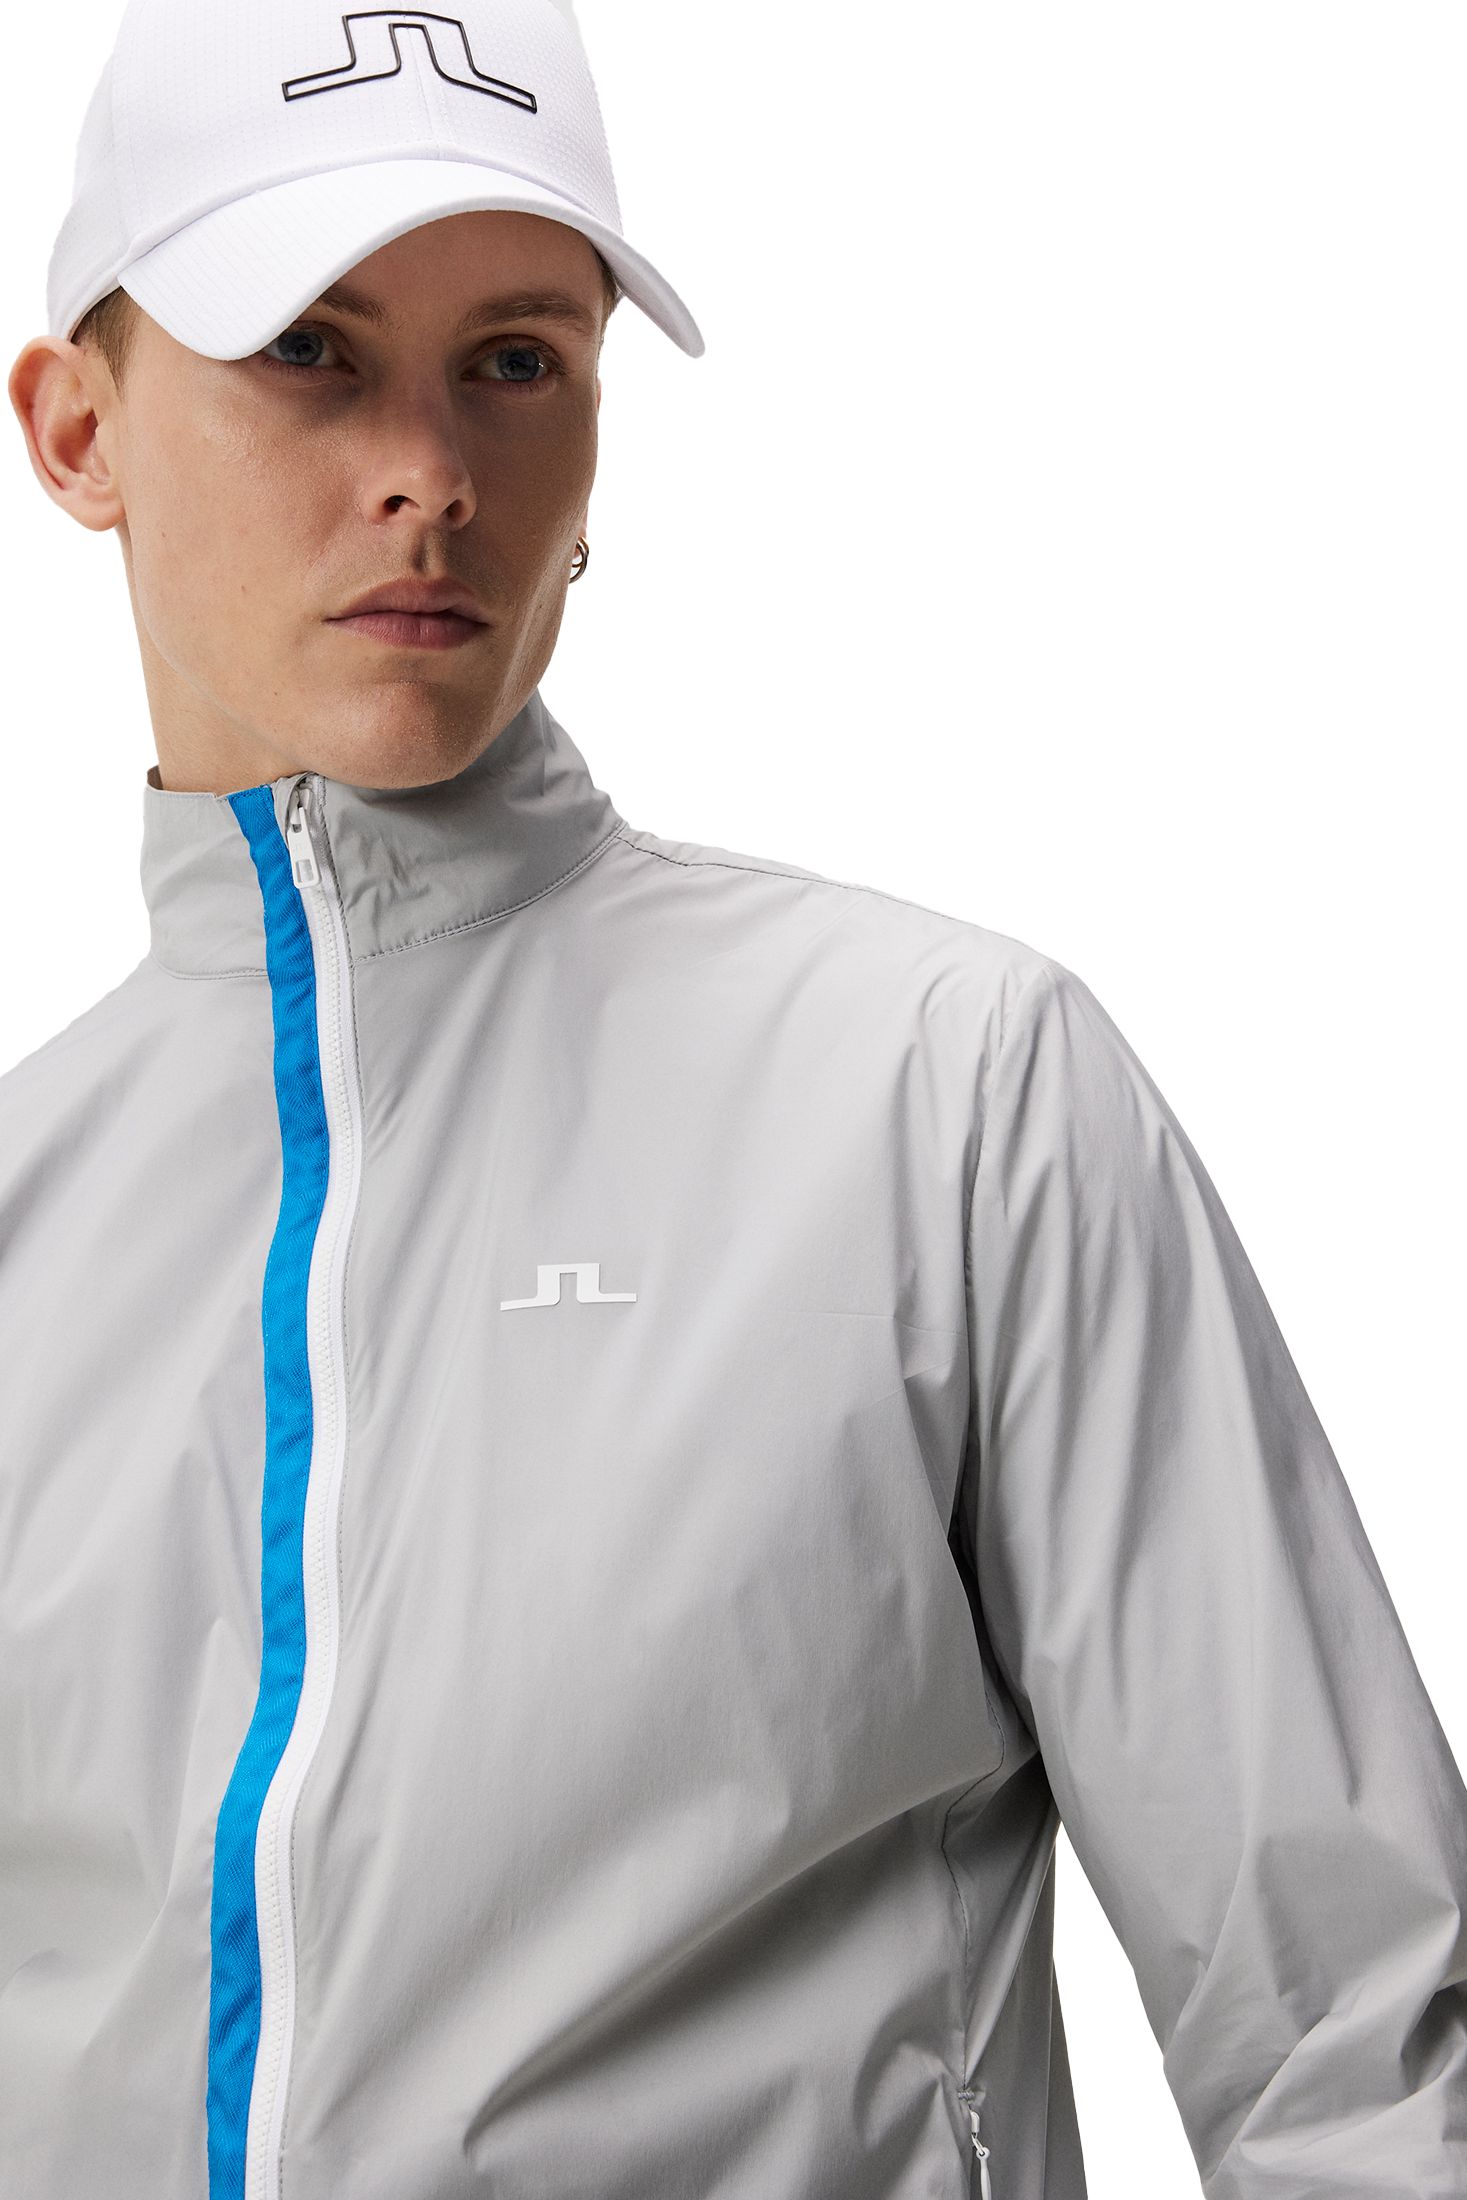 J LINDEBERG, M Ash Light Packable Golf Jacket